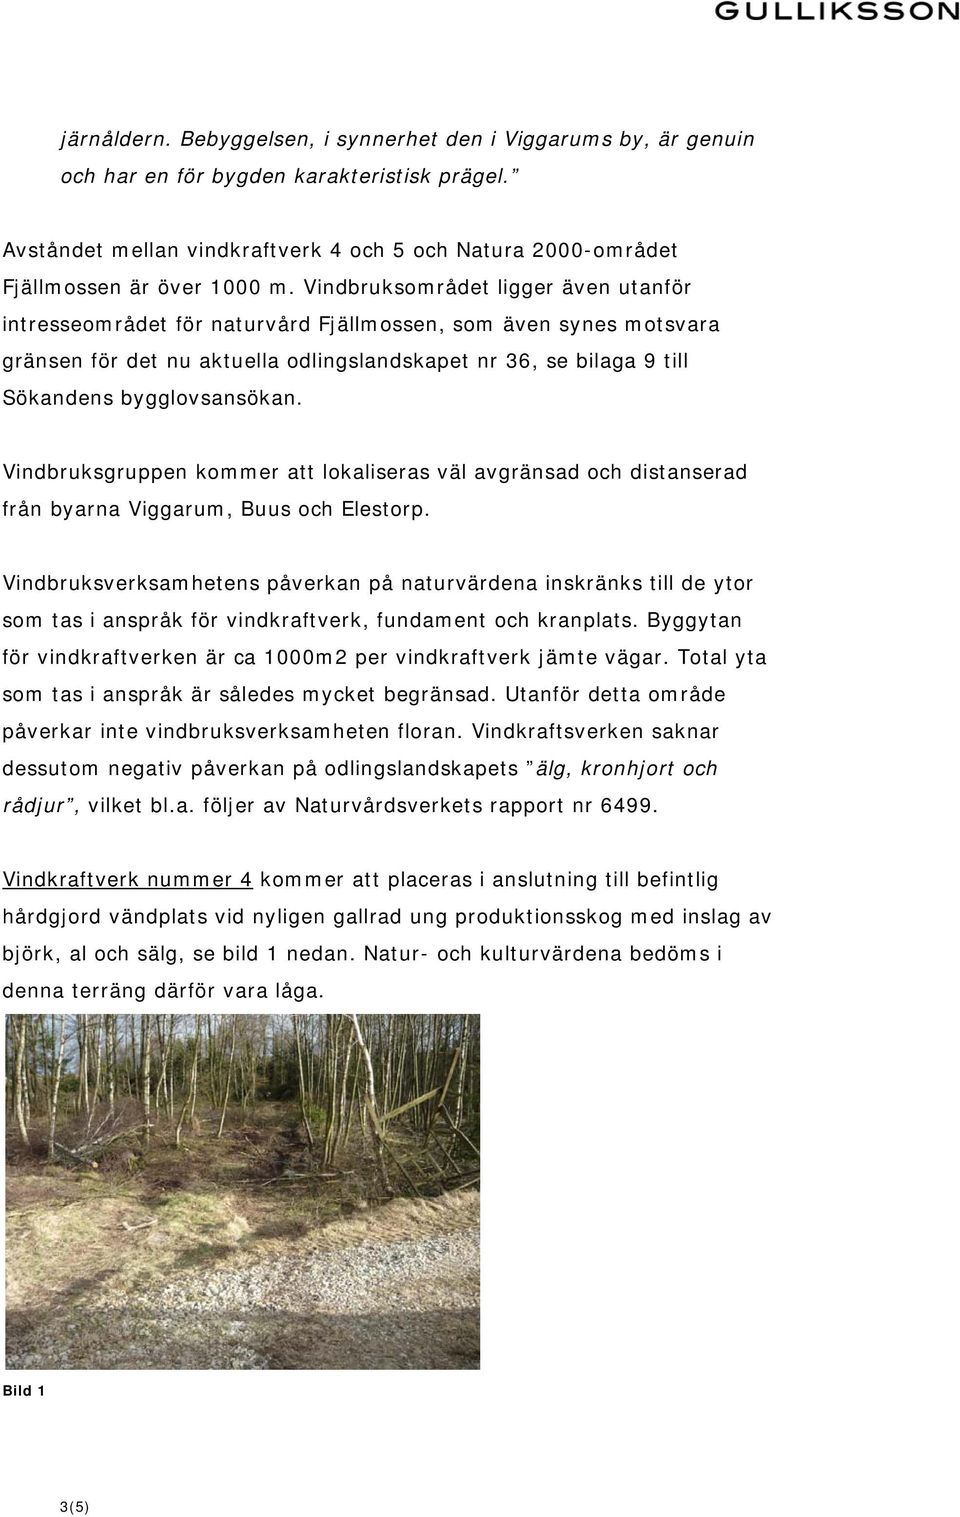 Vindbruksområdet ligger även utanför intresseområdet för naturvård Fjällmossen, som även synes motsvara gränsen för det nu aktuella odlingslandskapet nr 36, se bilaga 9 till Sökandens bygglovsansökan.